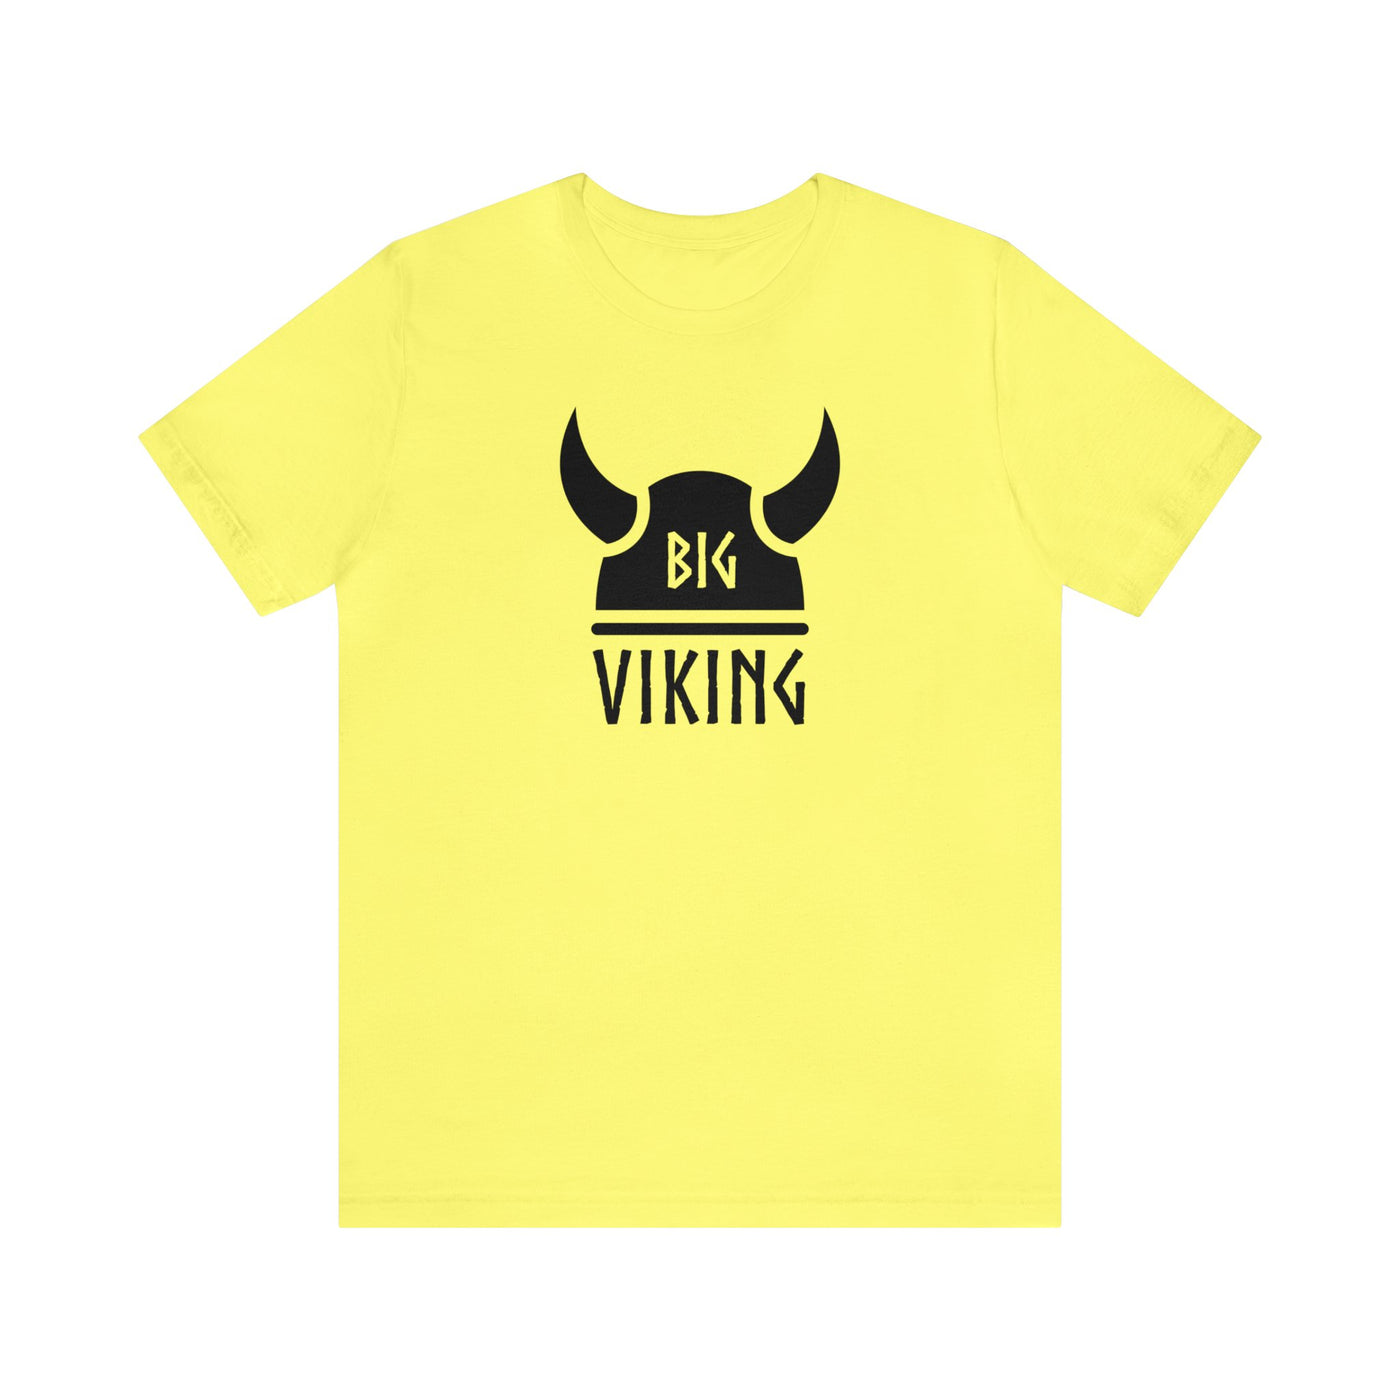 Big Viking Unisex T-Shirt